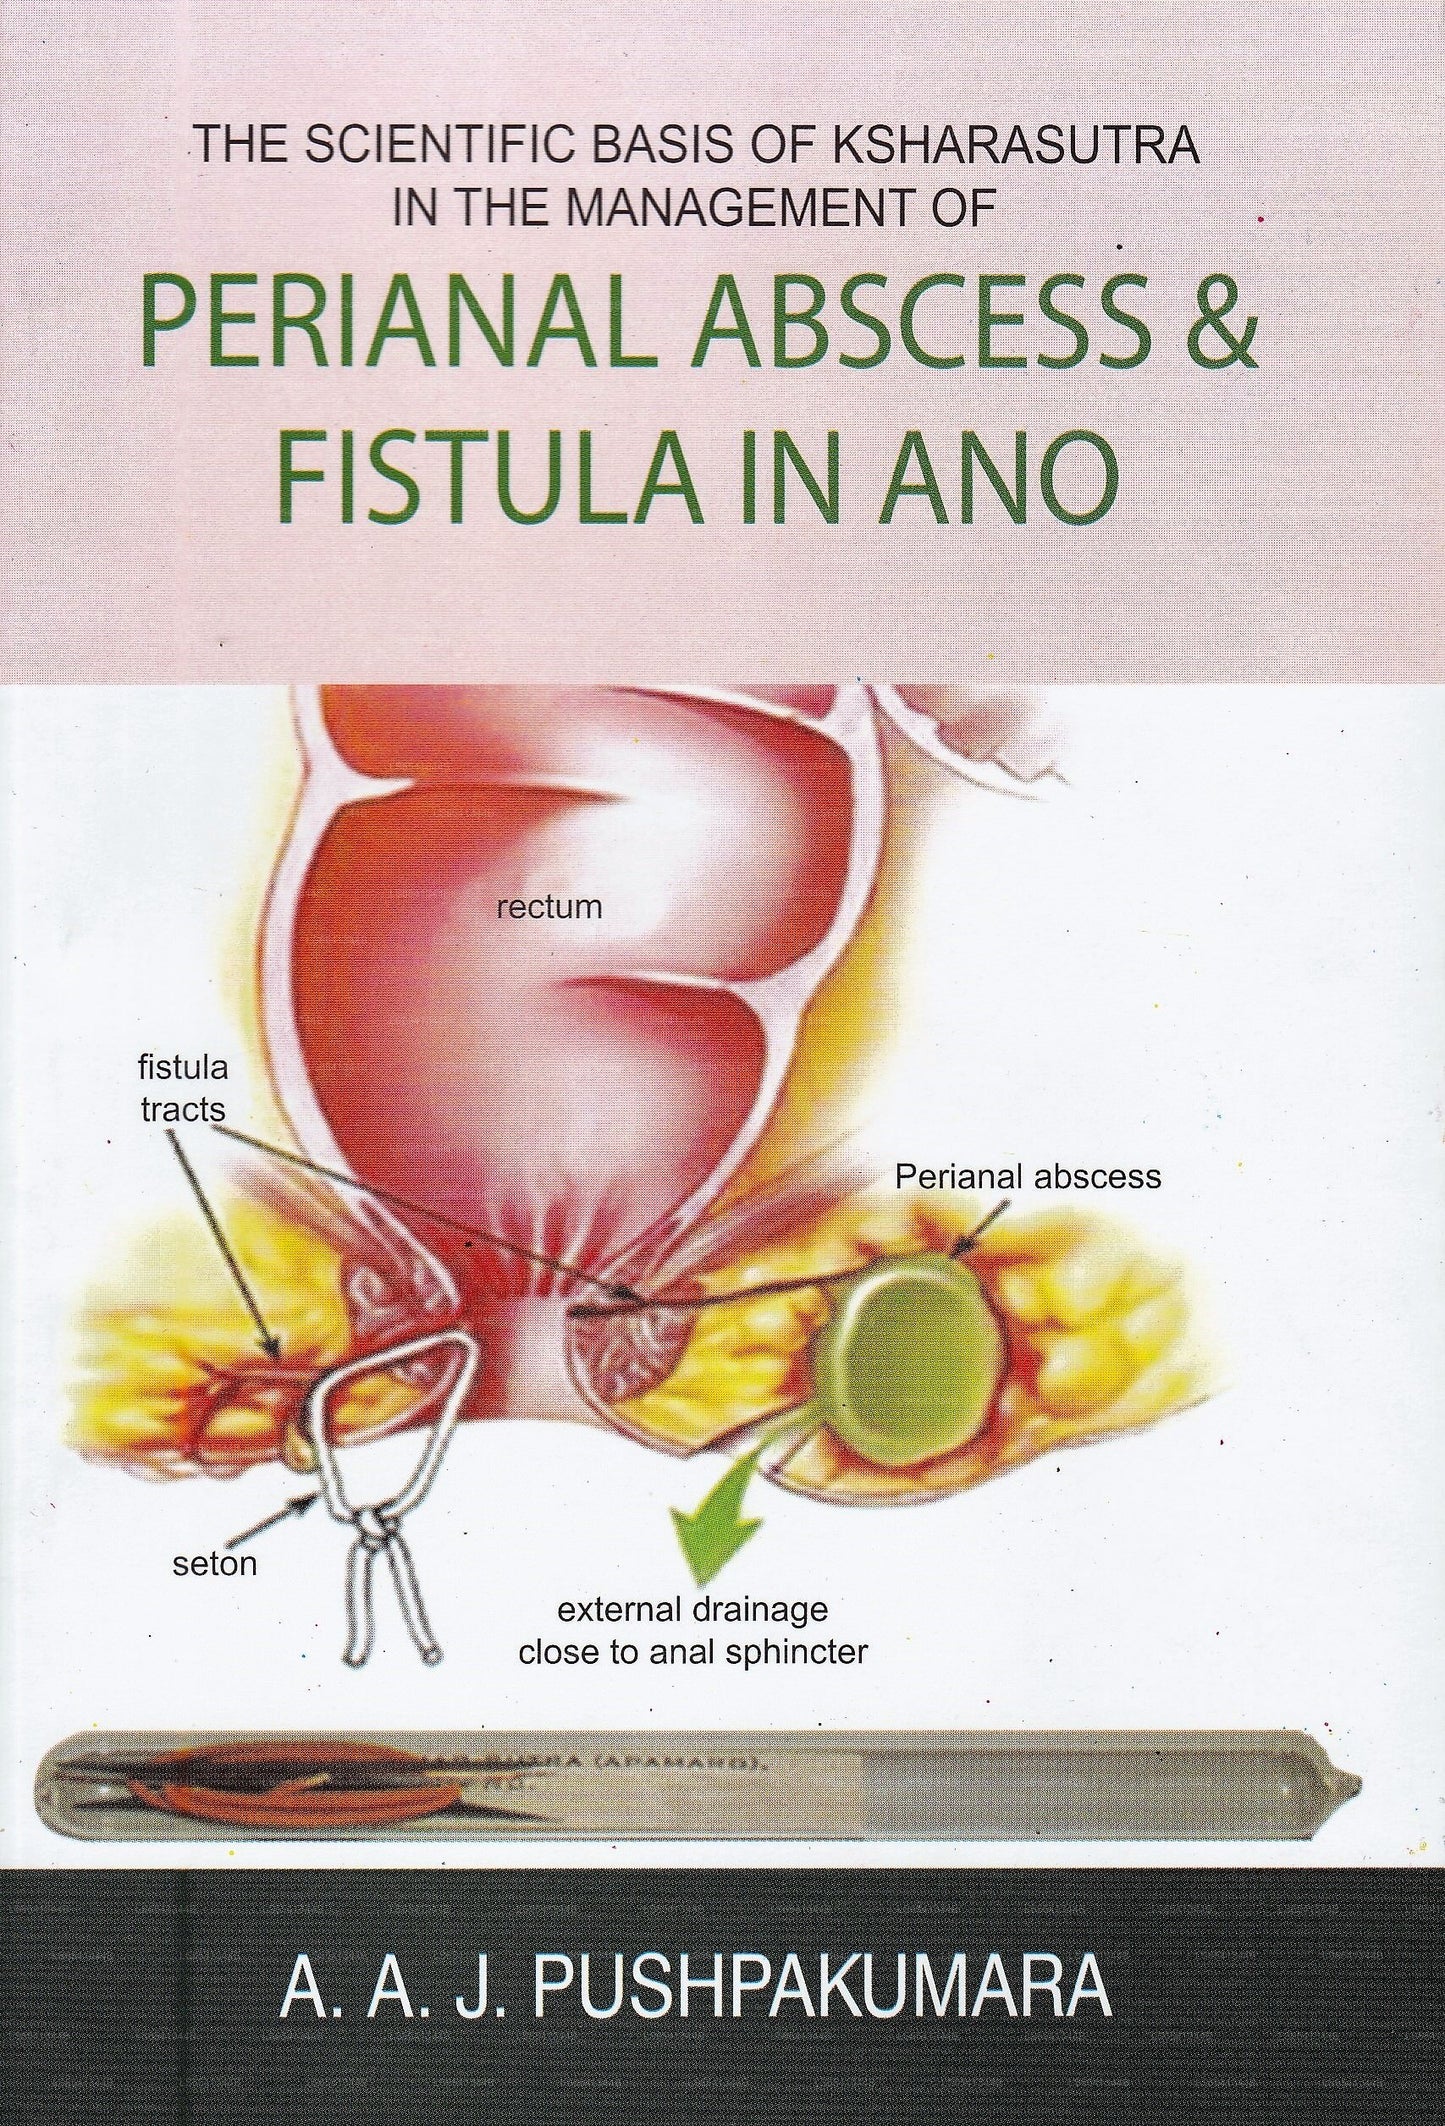 肛門周囲膿瘍および肛門周囲膿瘍の管理におけるクシャラスートラの科学的根拠アノの瘻孔